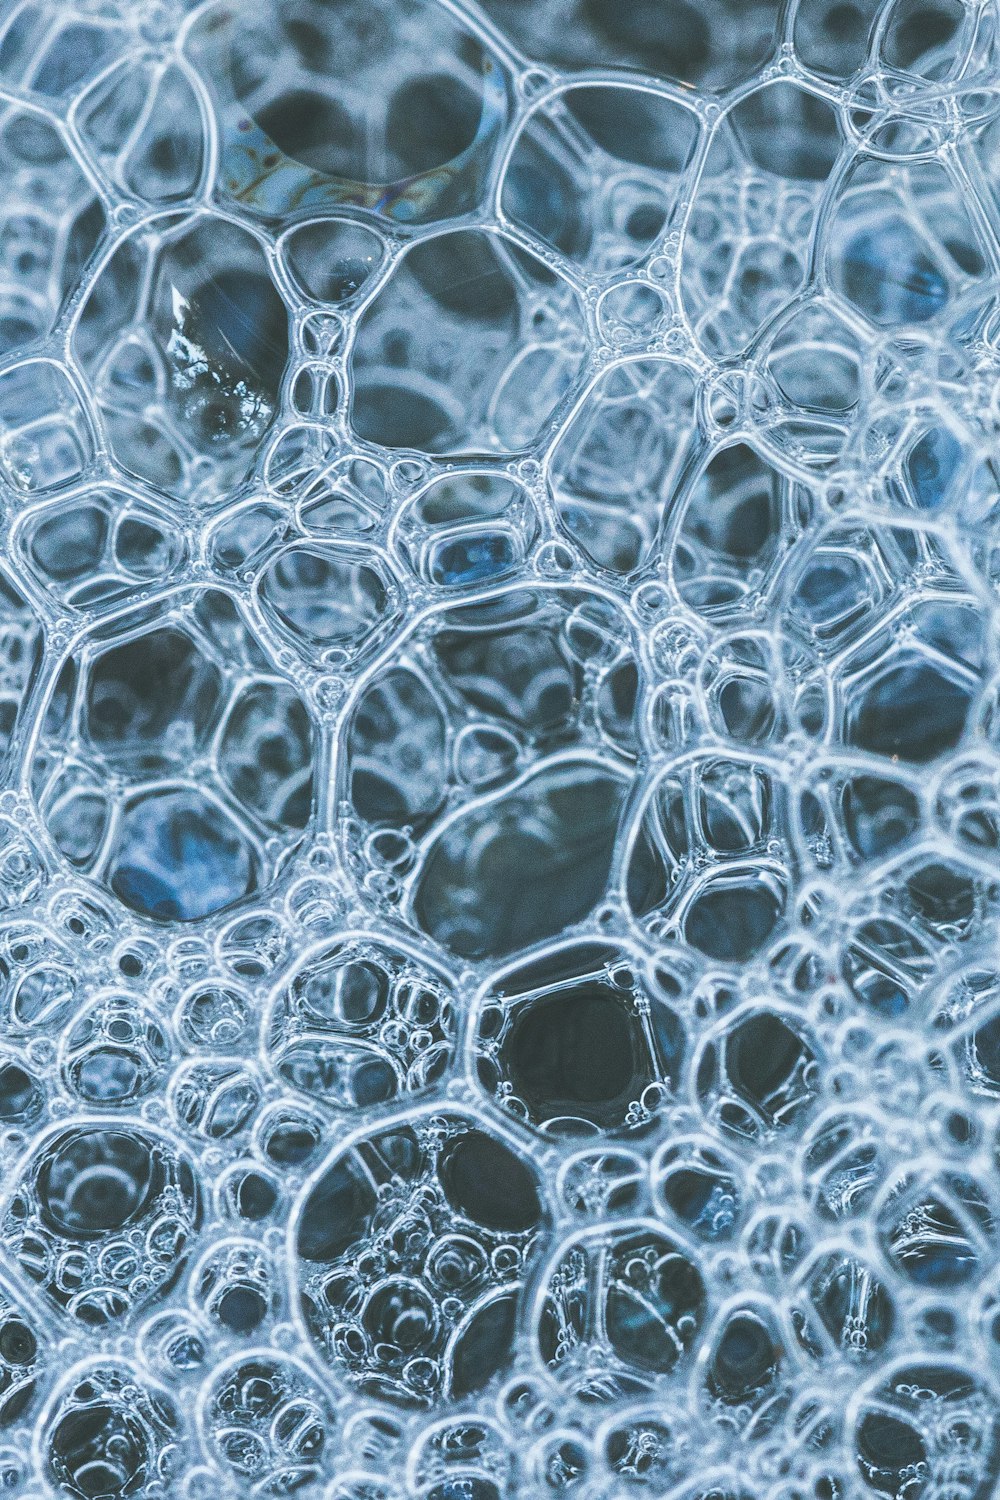 透明ガラスについた水滴